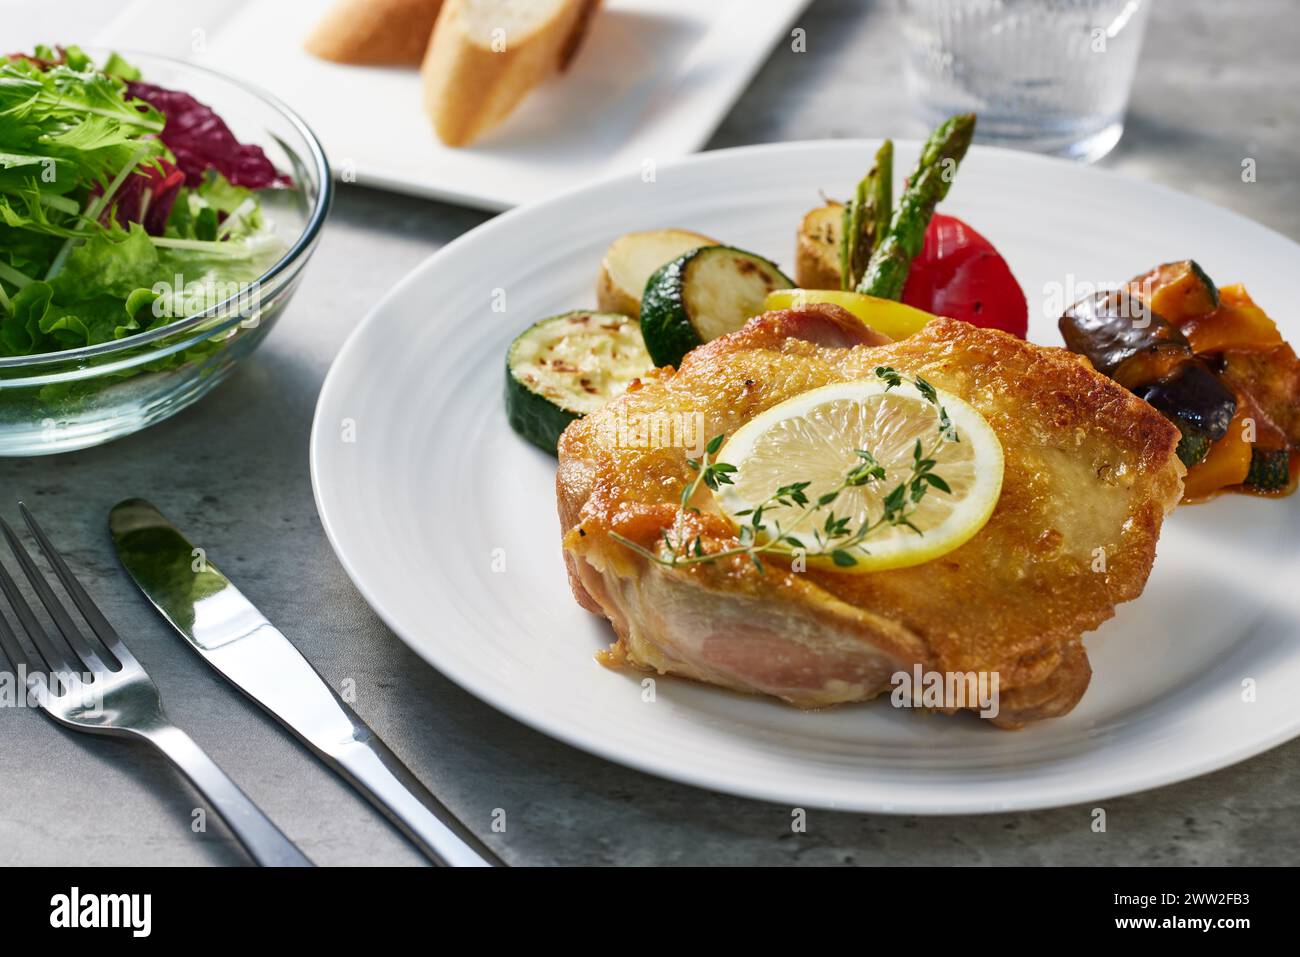 Une assiette avec une poitrine de poulet et des légumes Banque D'Images